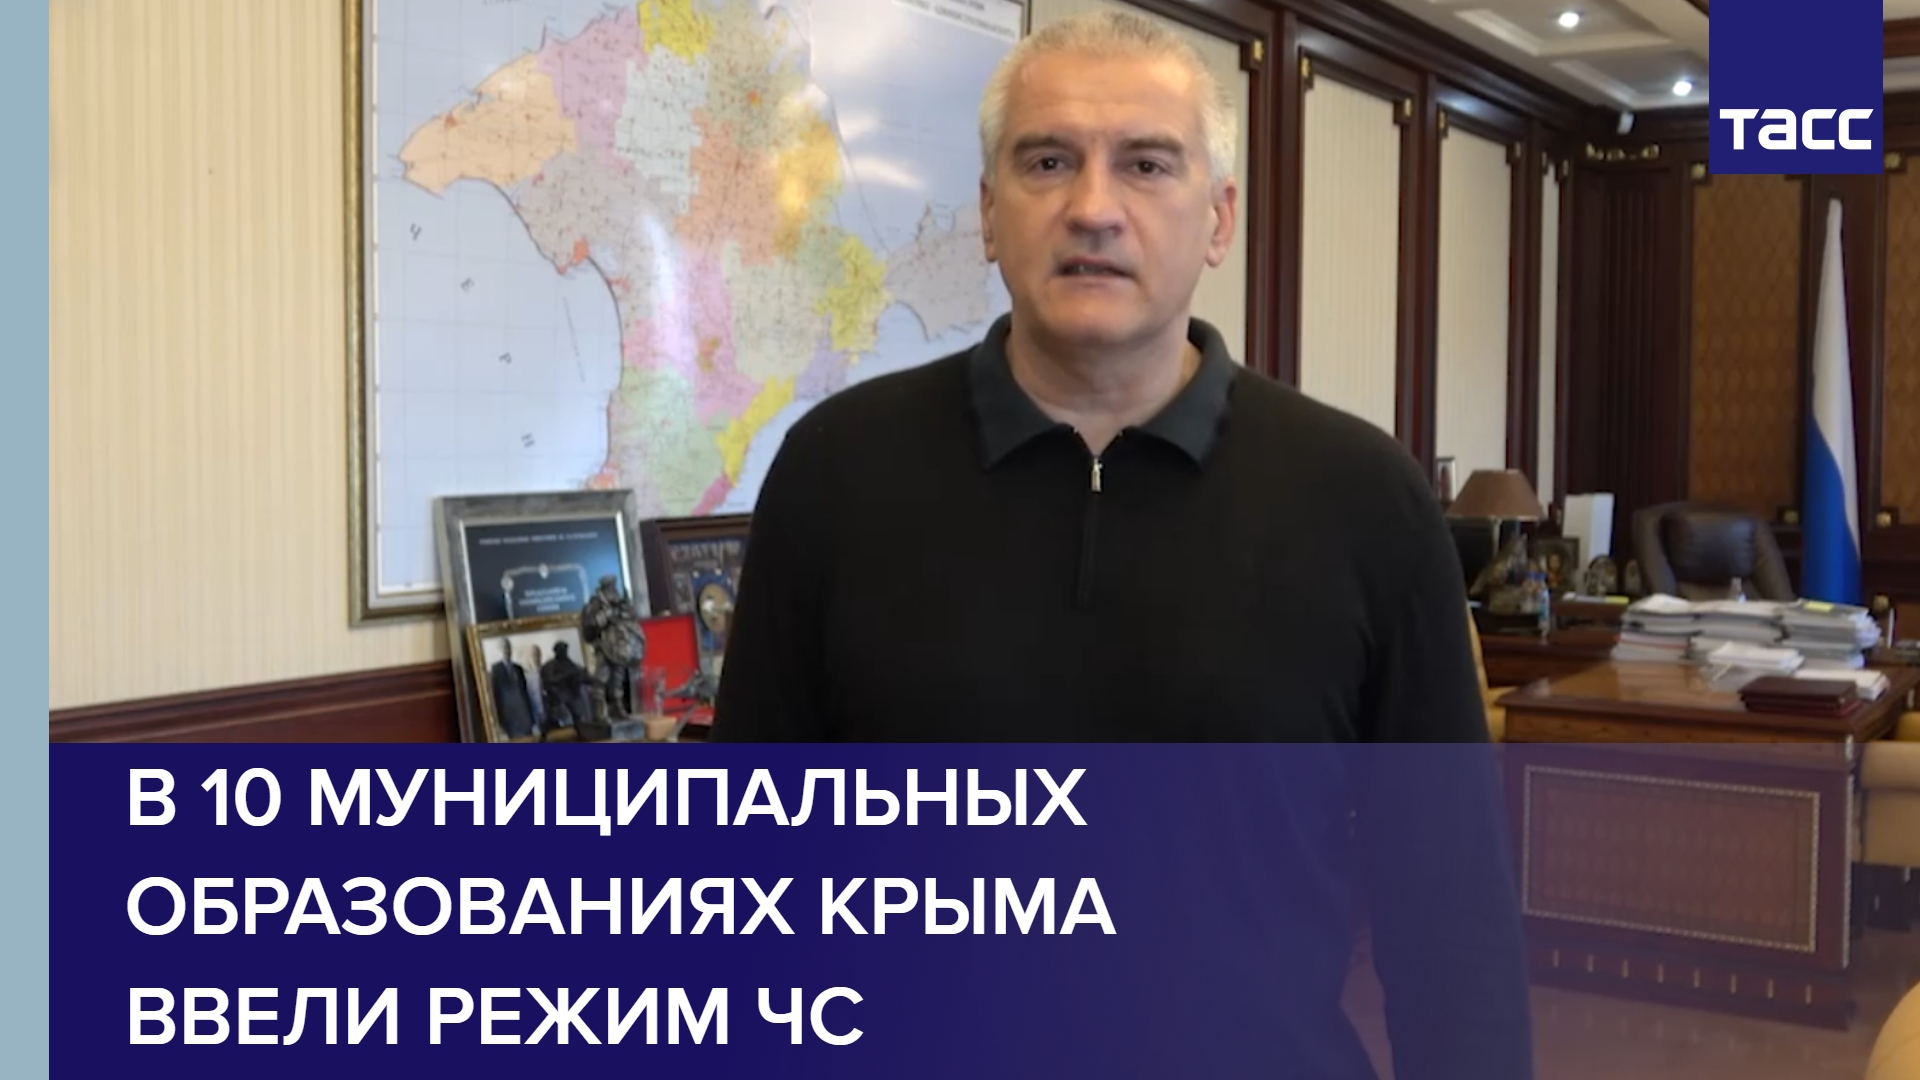 В 10 муниципальных образованиях Крыма ввели режим ЧС